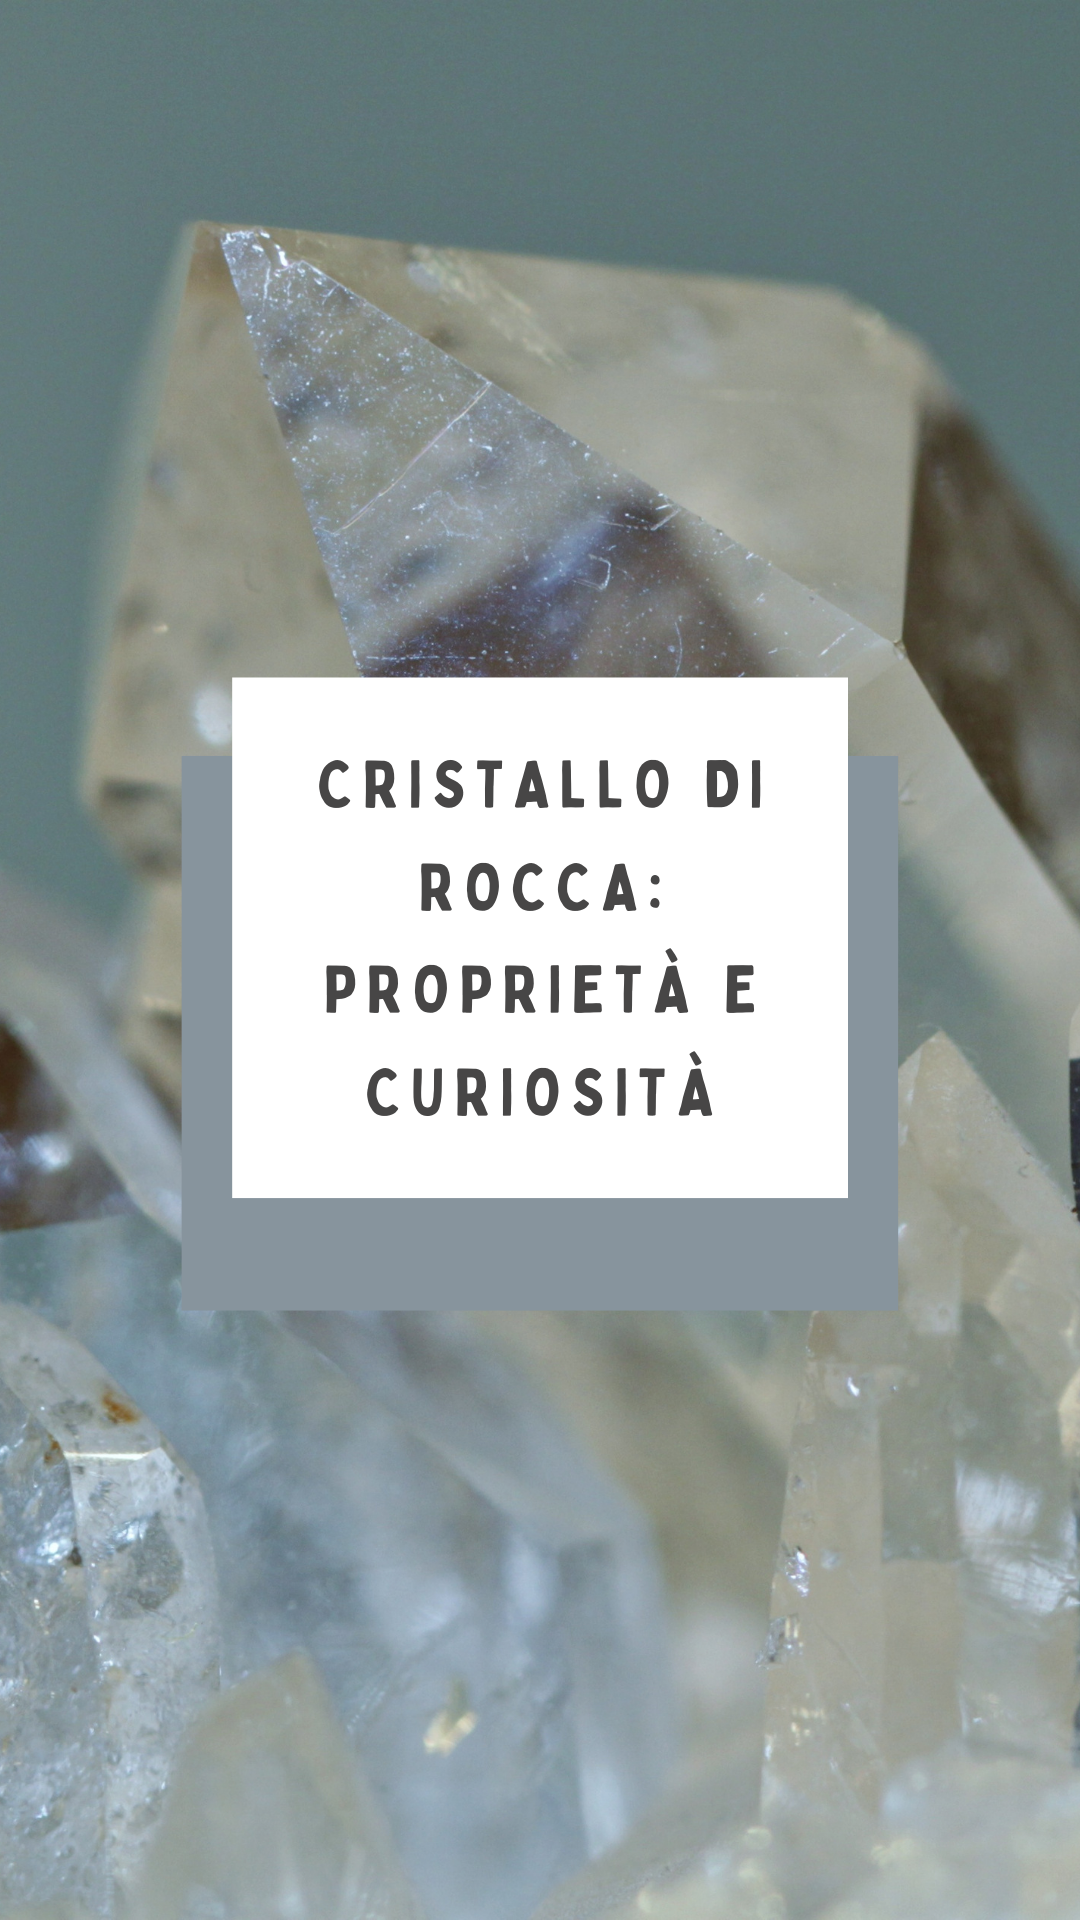 Cristallo di Rocca: caratteristiche, proprietà e curiosità